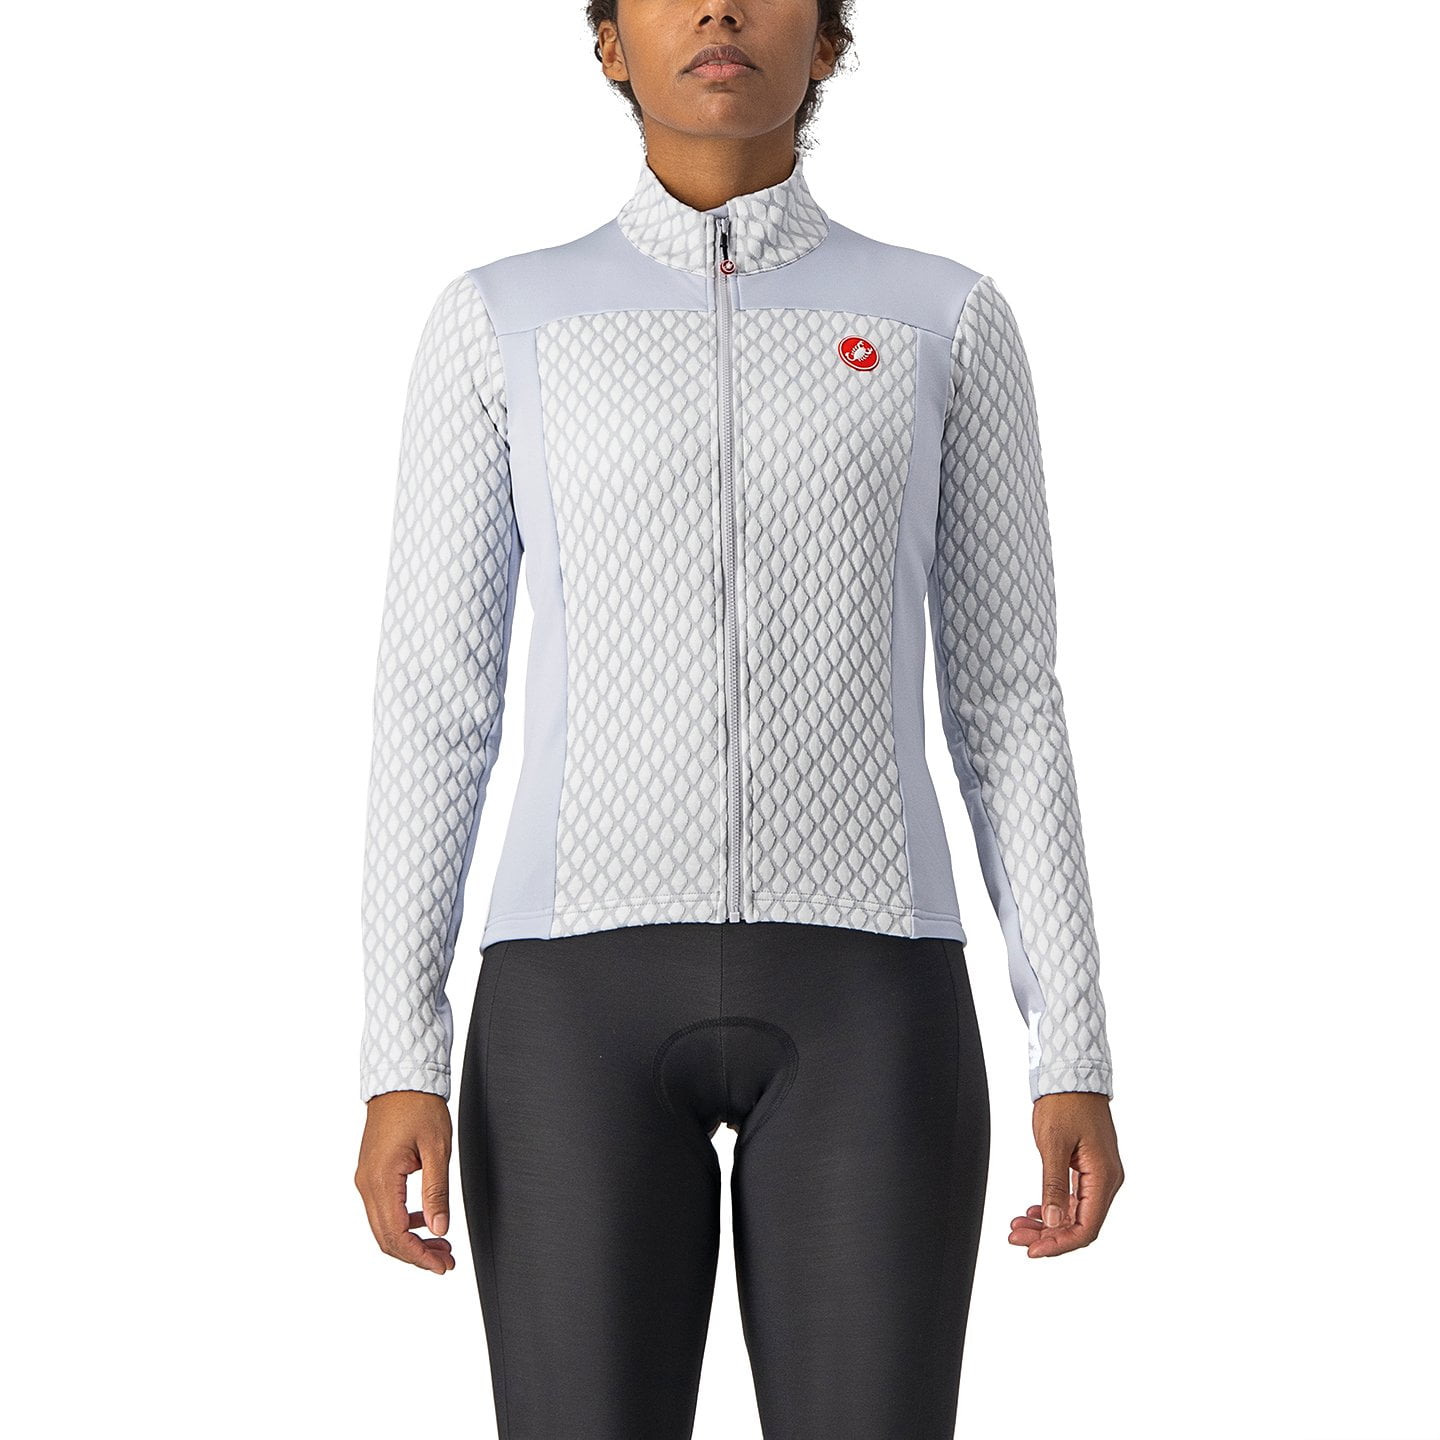 CASTELLI Sfida 2 Women’s Jersey Jacket Jersey / Jacket, size XL, Cycle jersey, Bike gear